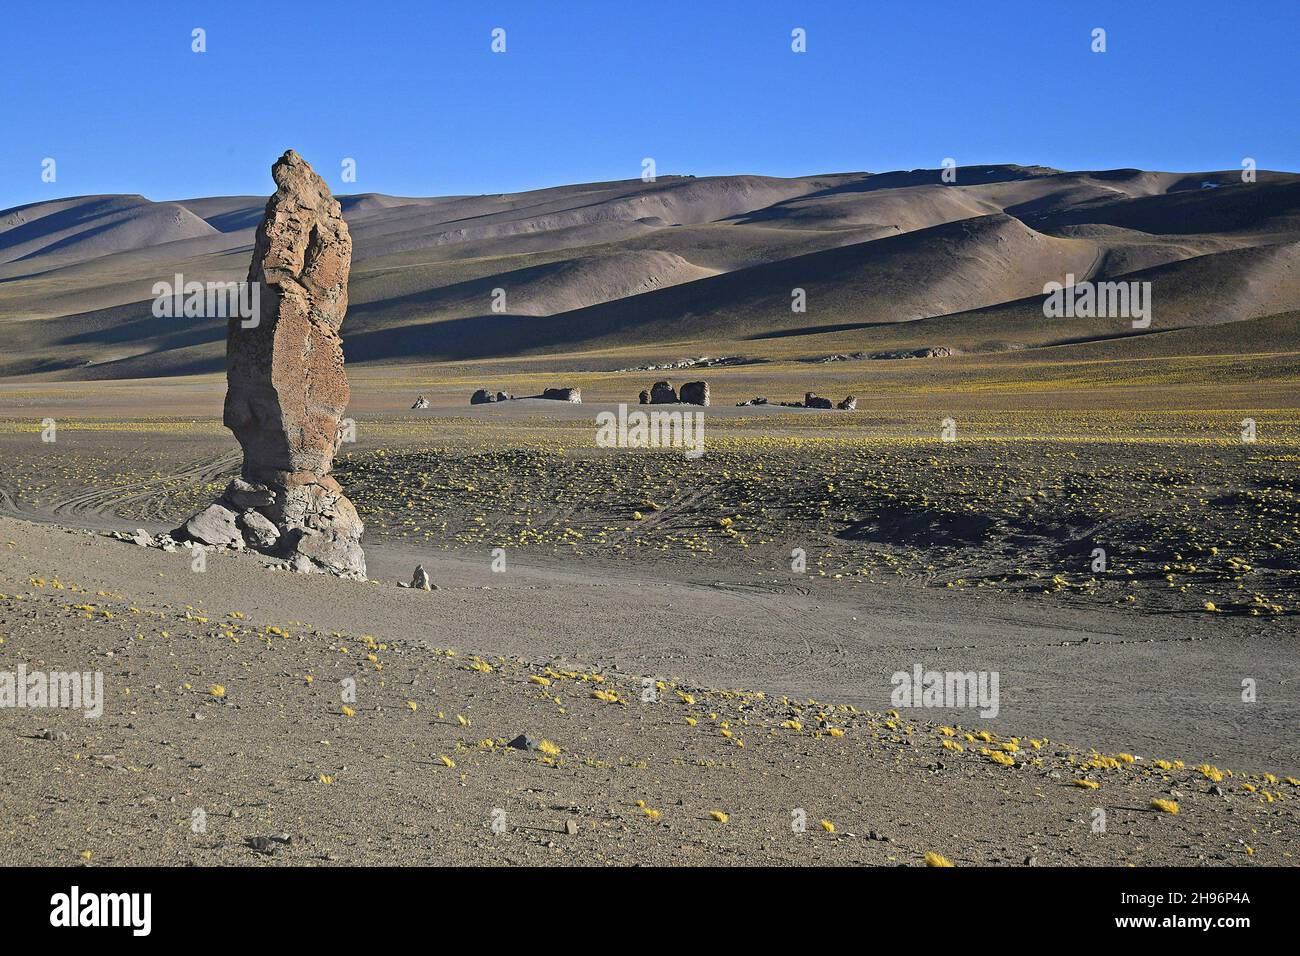 Monolithe géologique (Monjes de la Pakana) et hil sec dans le désert d'Atacama, au Chili Banque D'Images